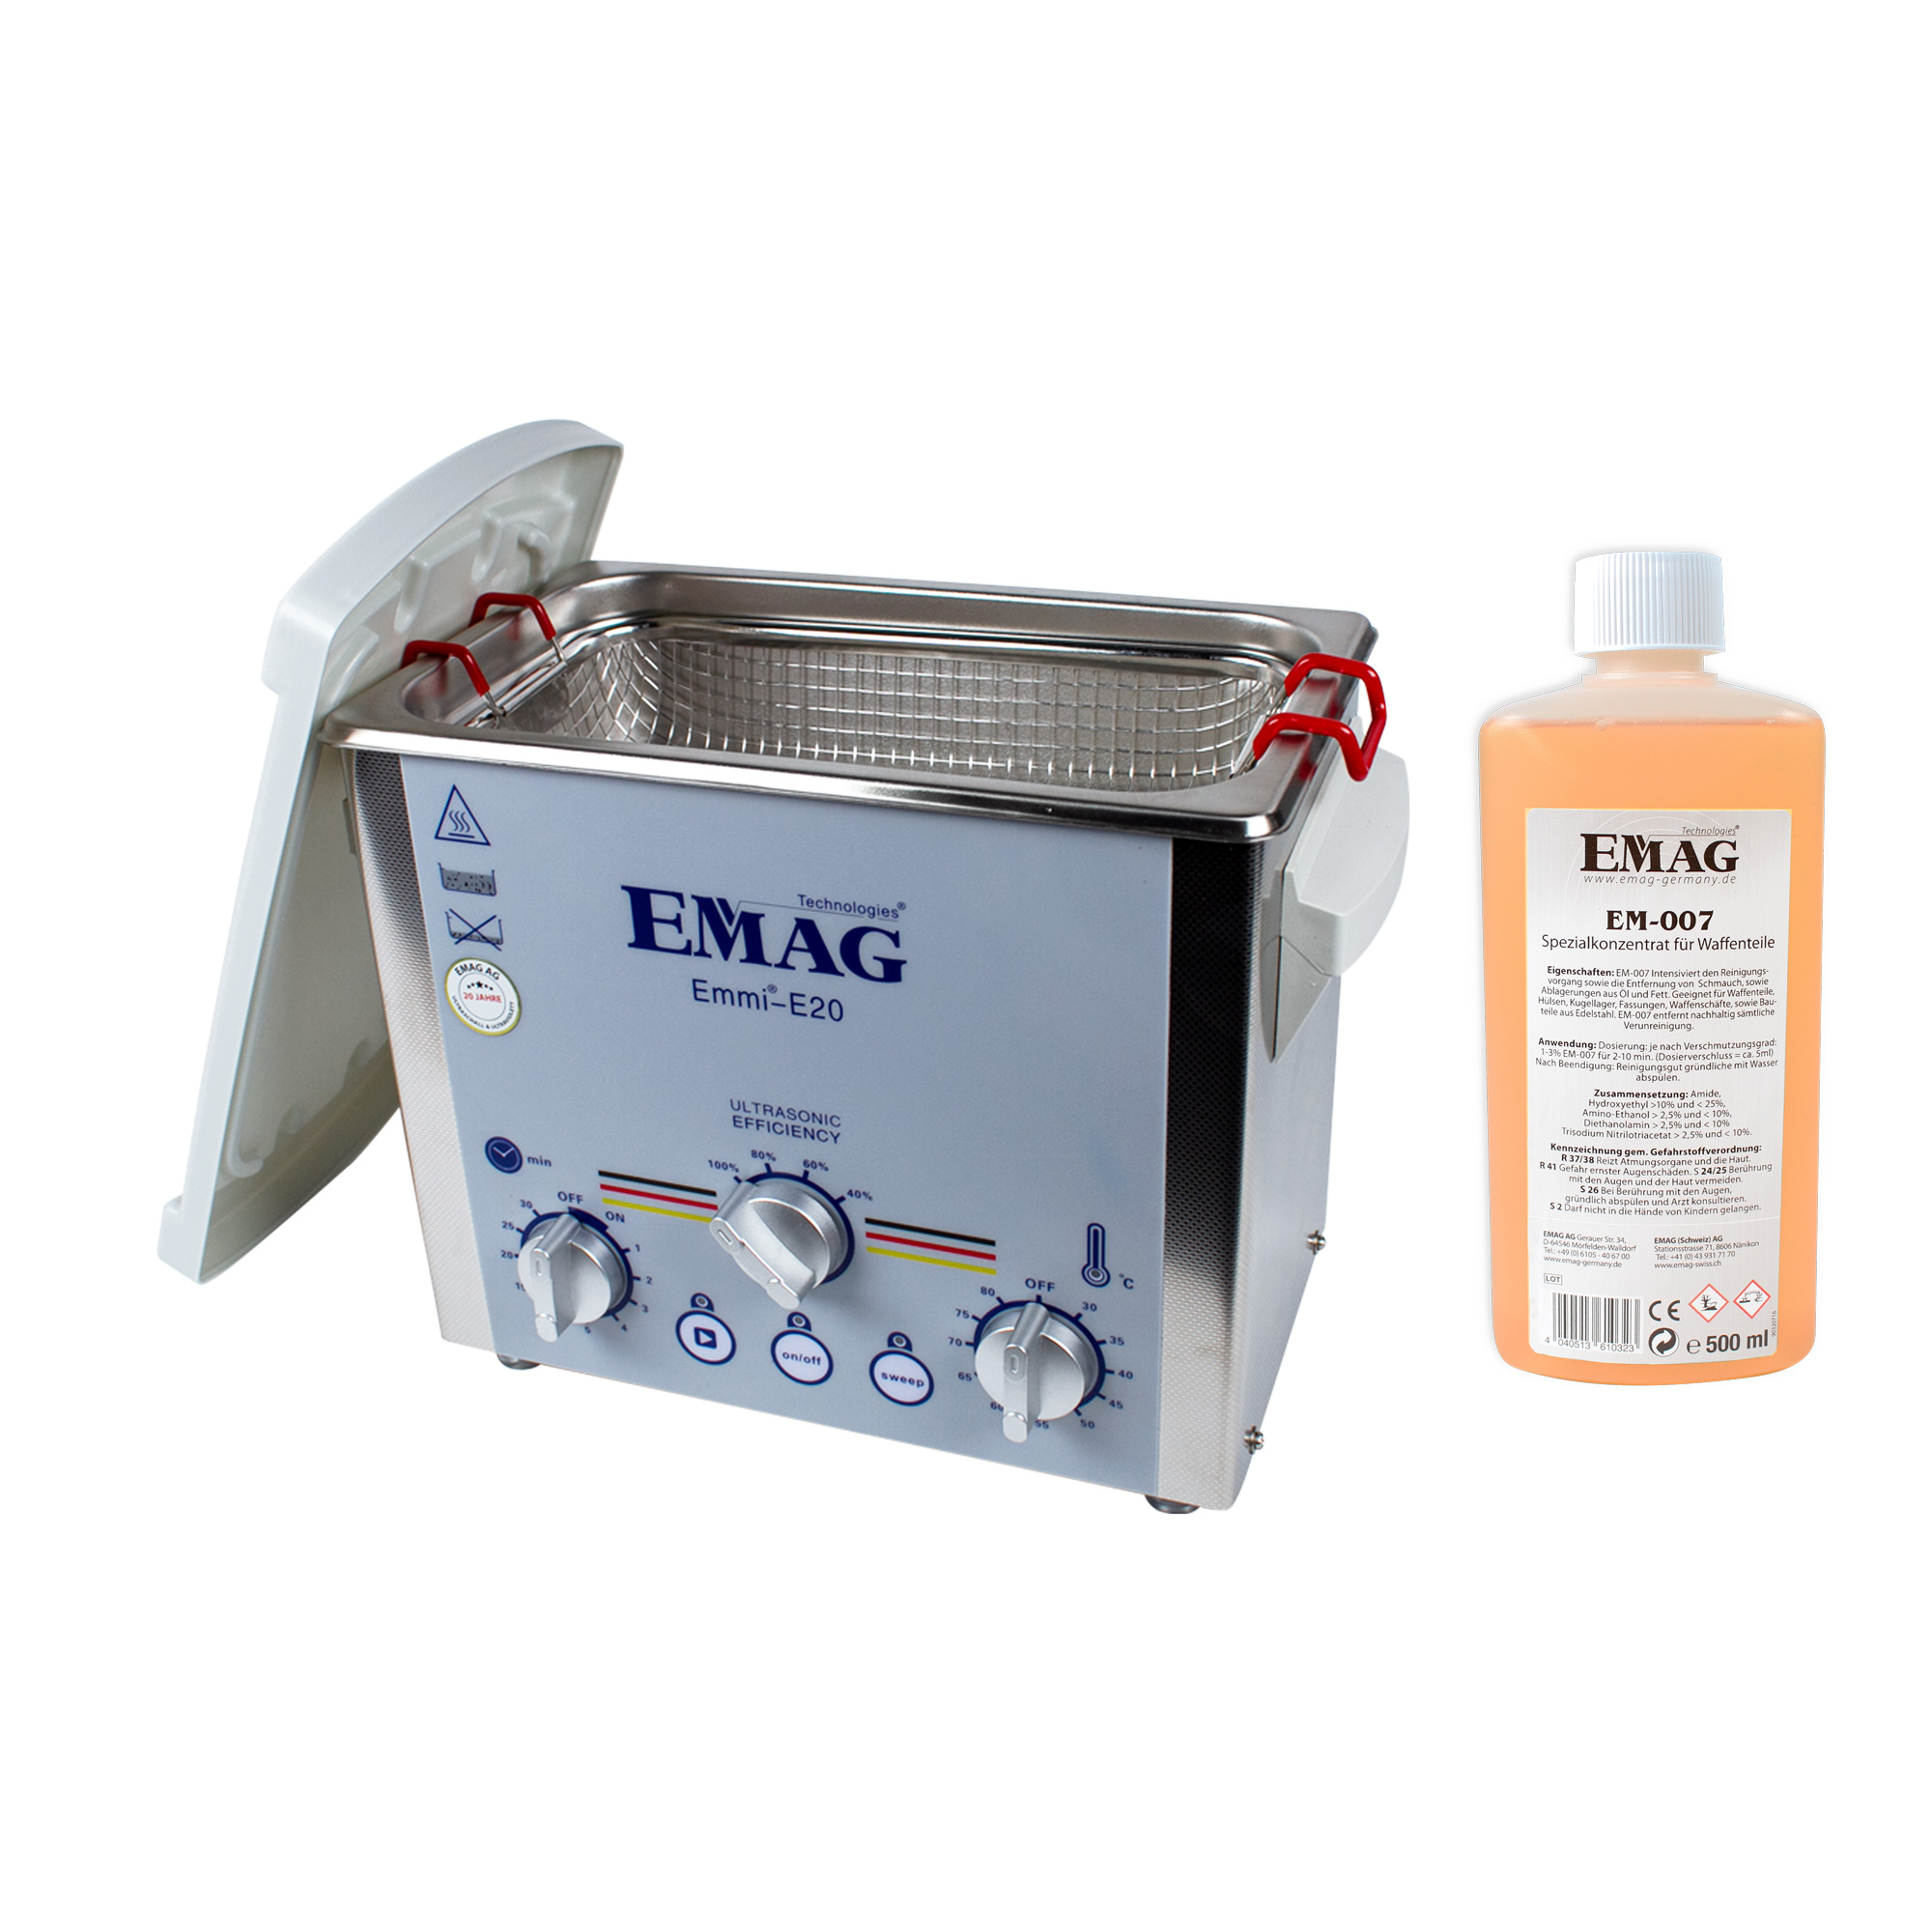 EMAG emmi® E20 Ultraschall Ultraschallreinigungsgerät Spezial-Set